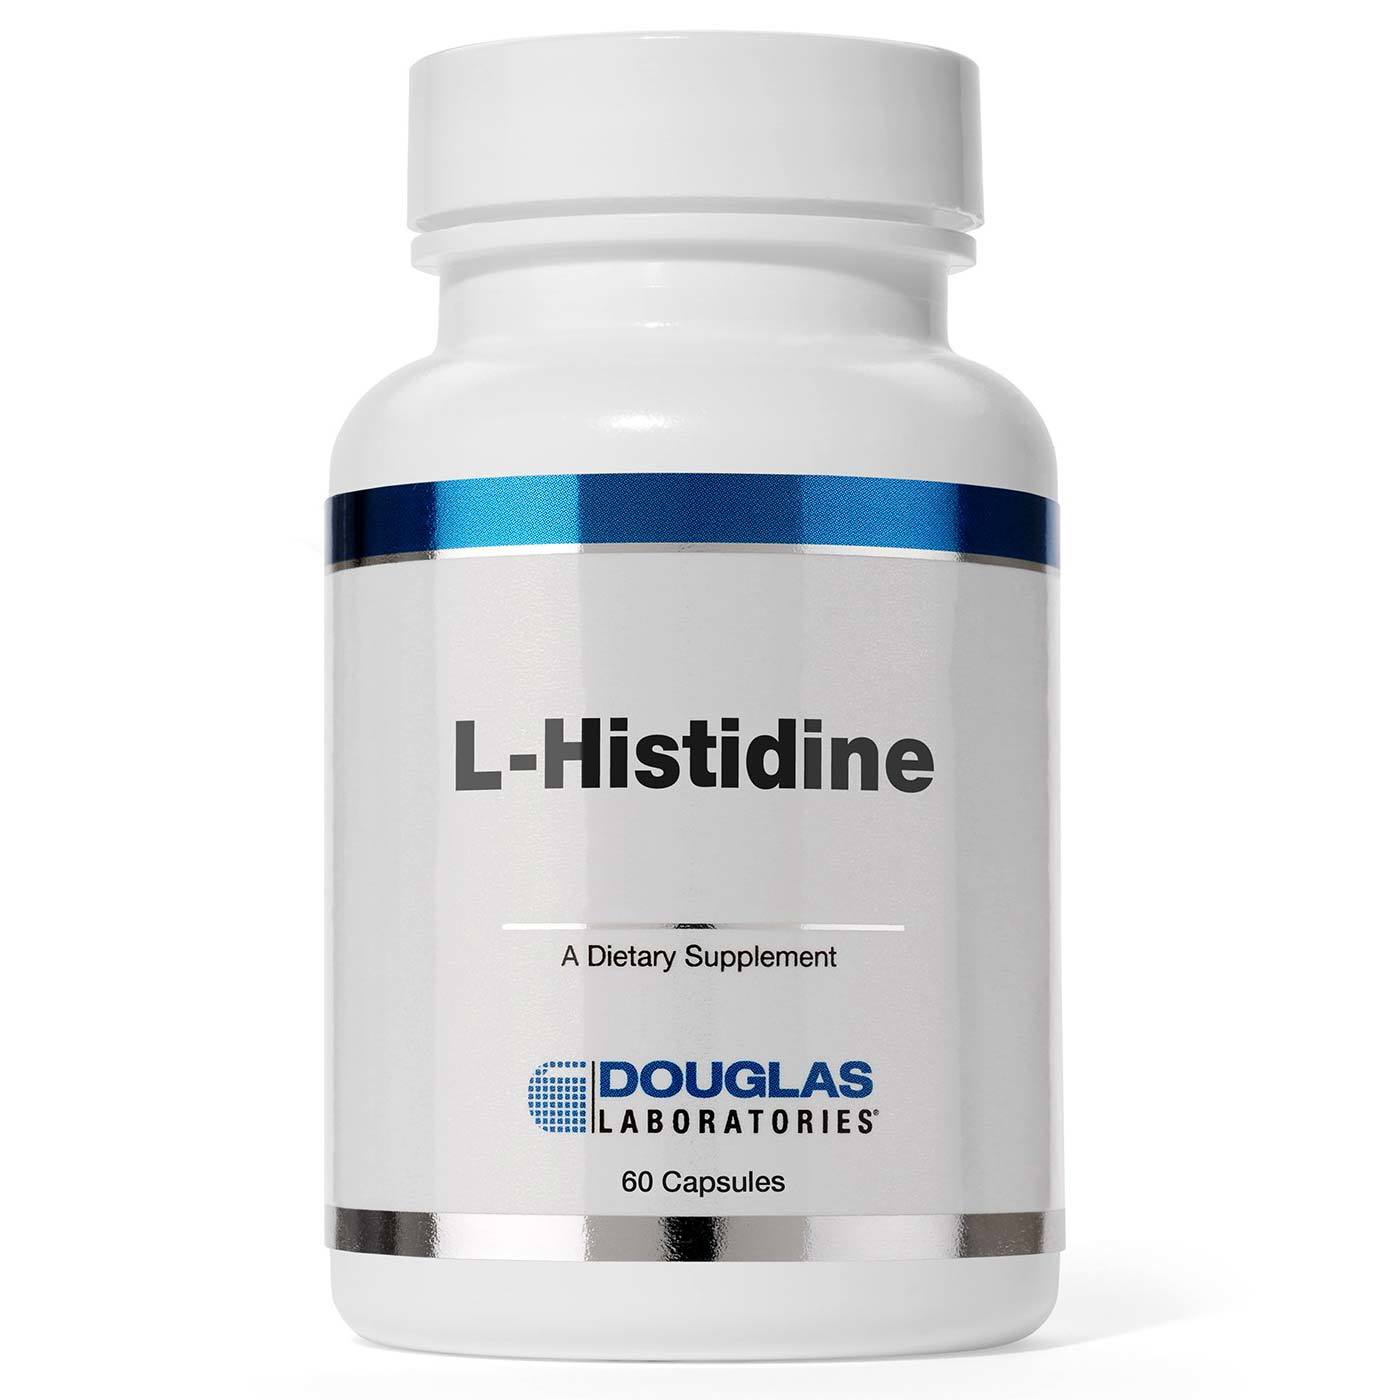 469 L-ГІСТИДИН - Histidine*